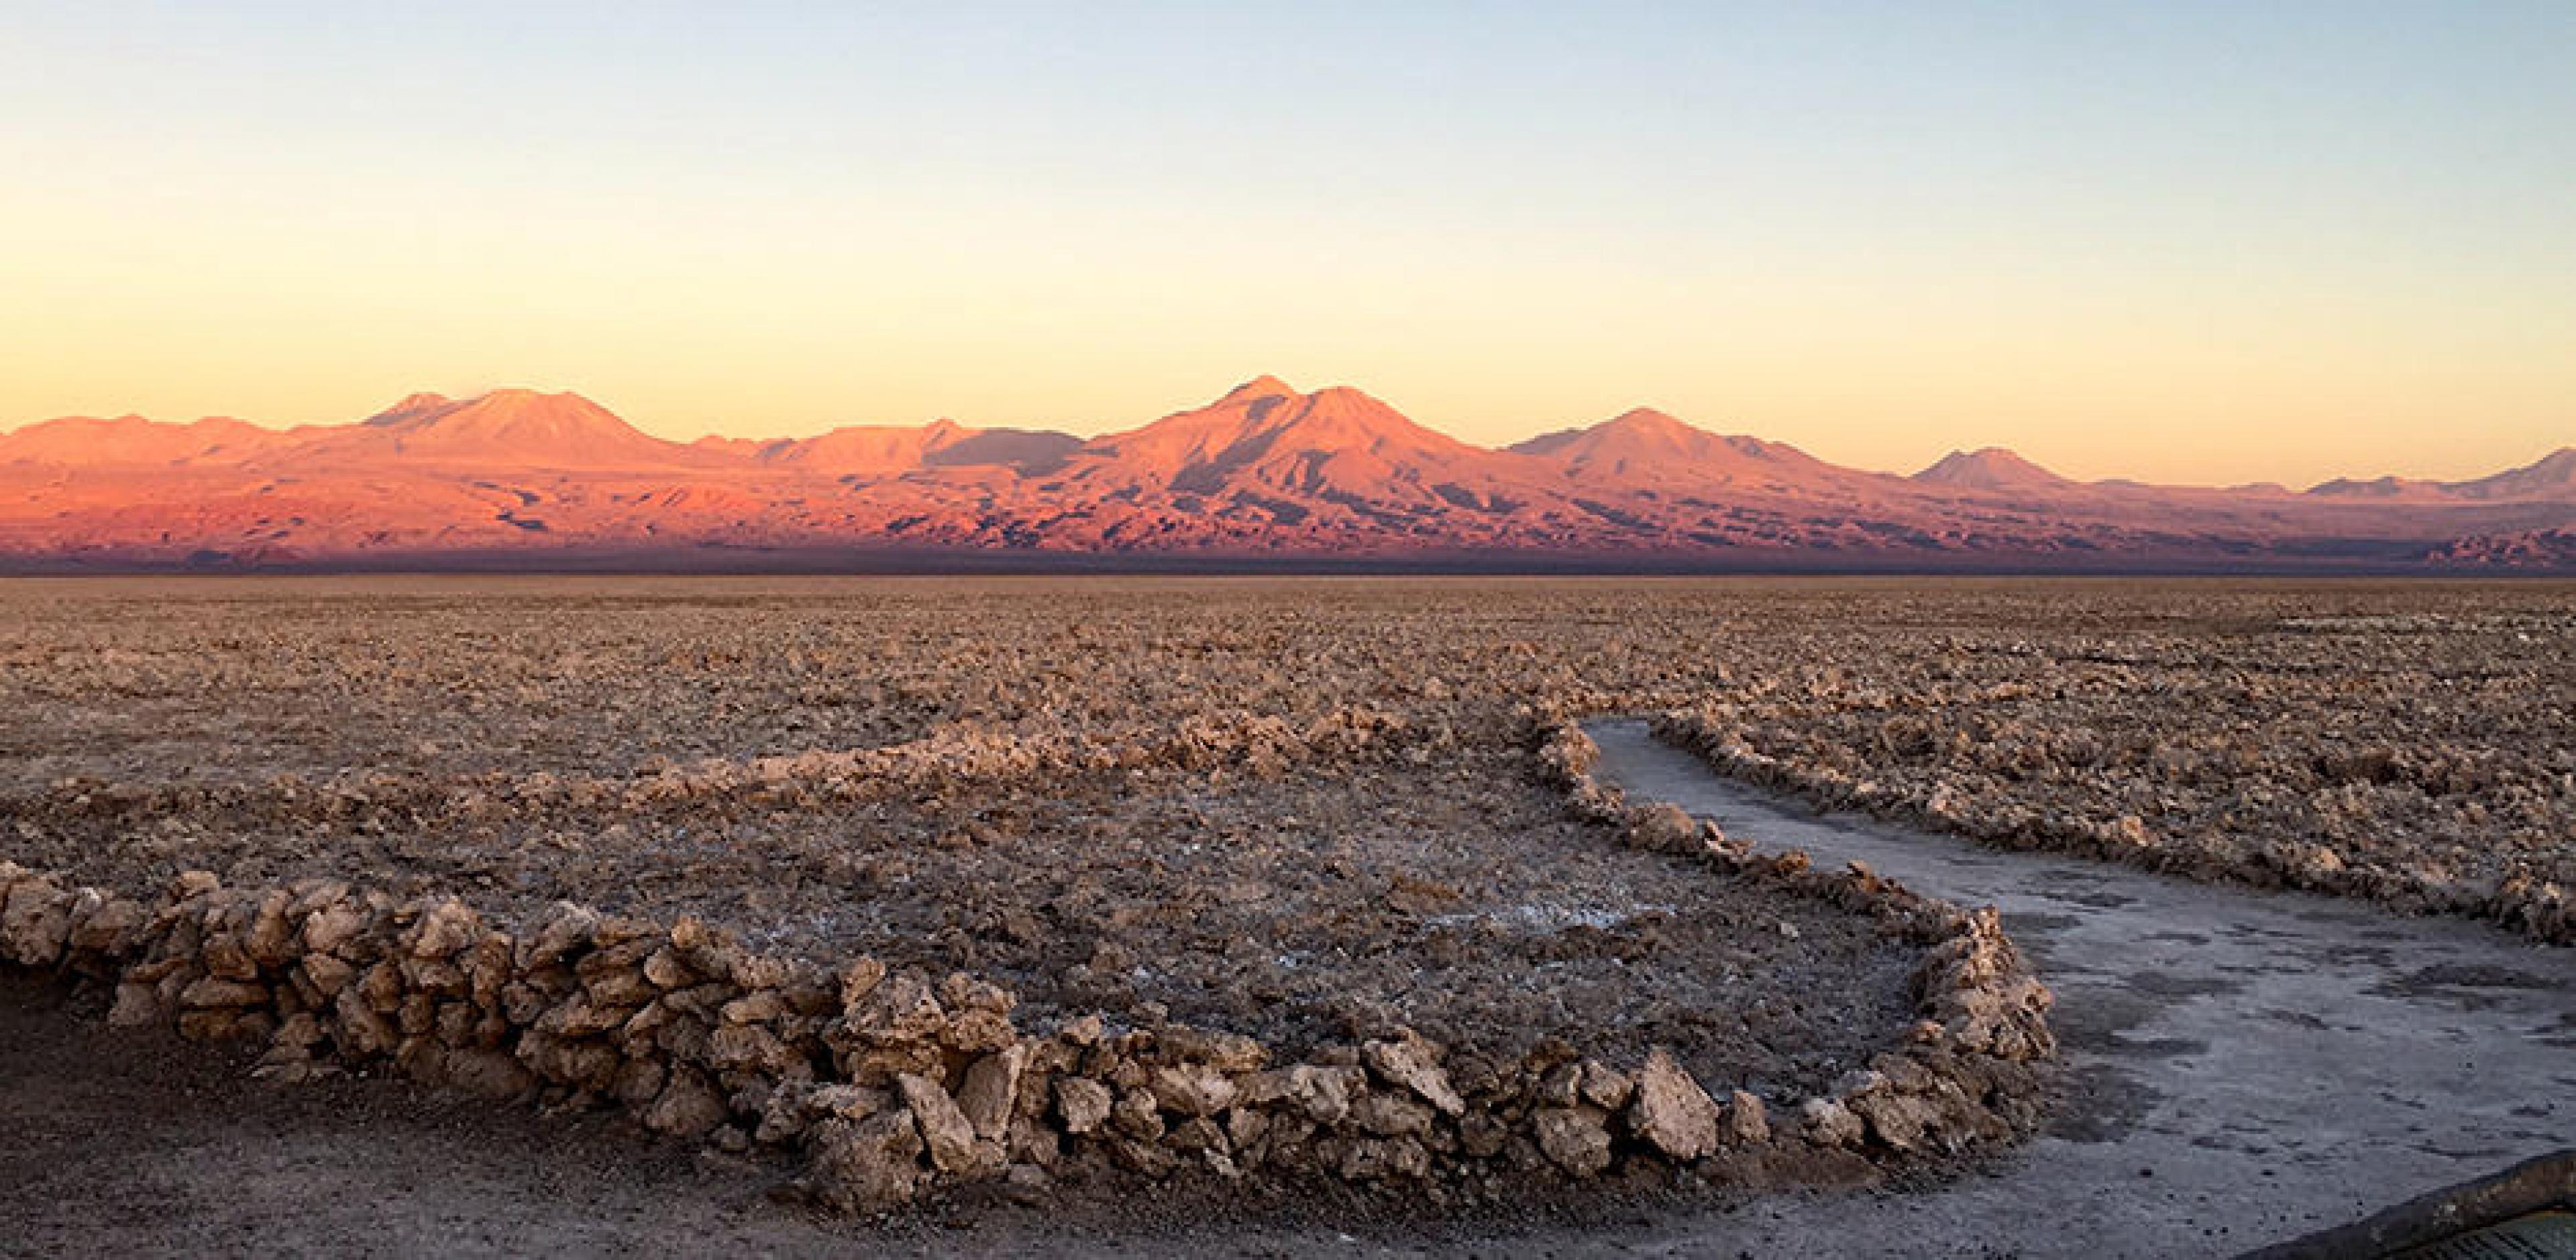 A colorful sunset at the Salar de Atacama (Atacama Salt Flat),  Atacama Desert in Chile.